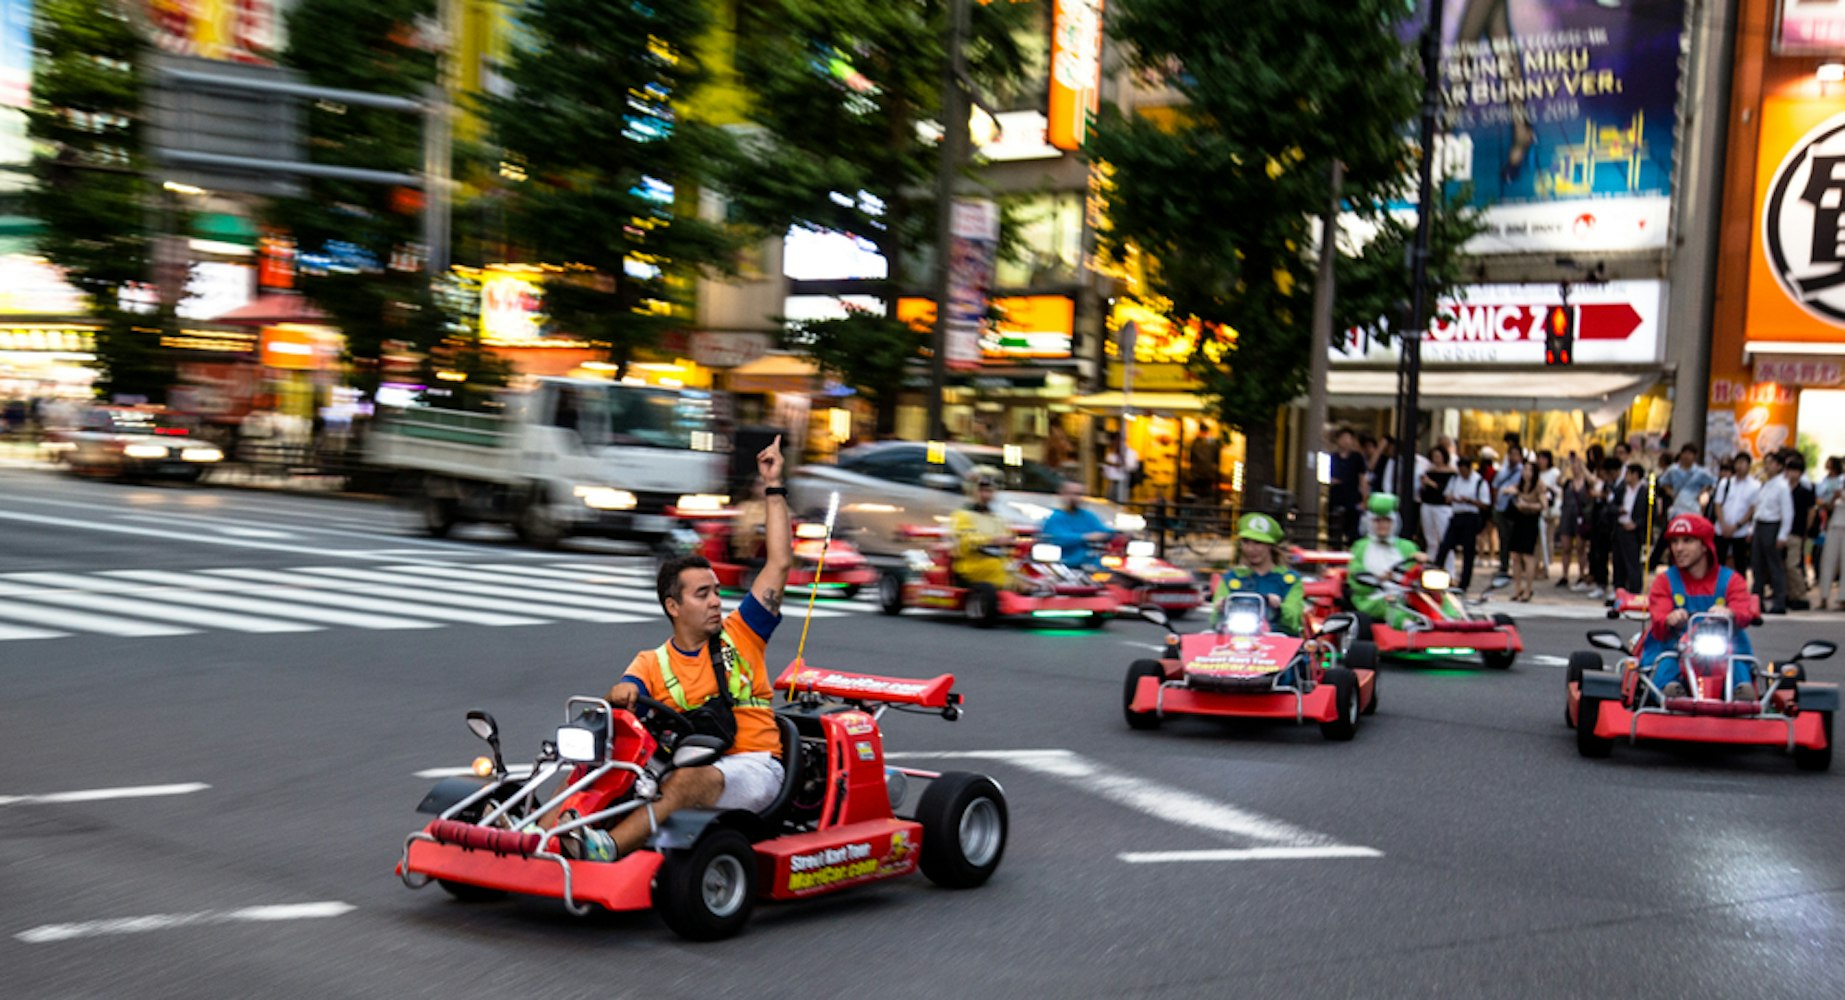 Street karting at Akihabara